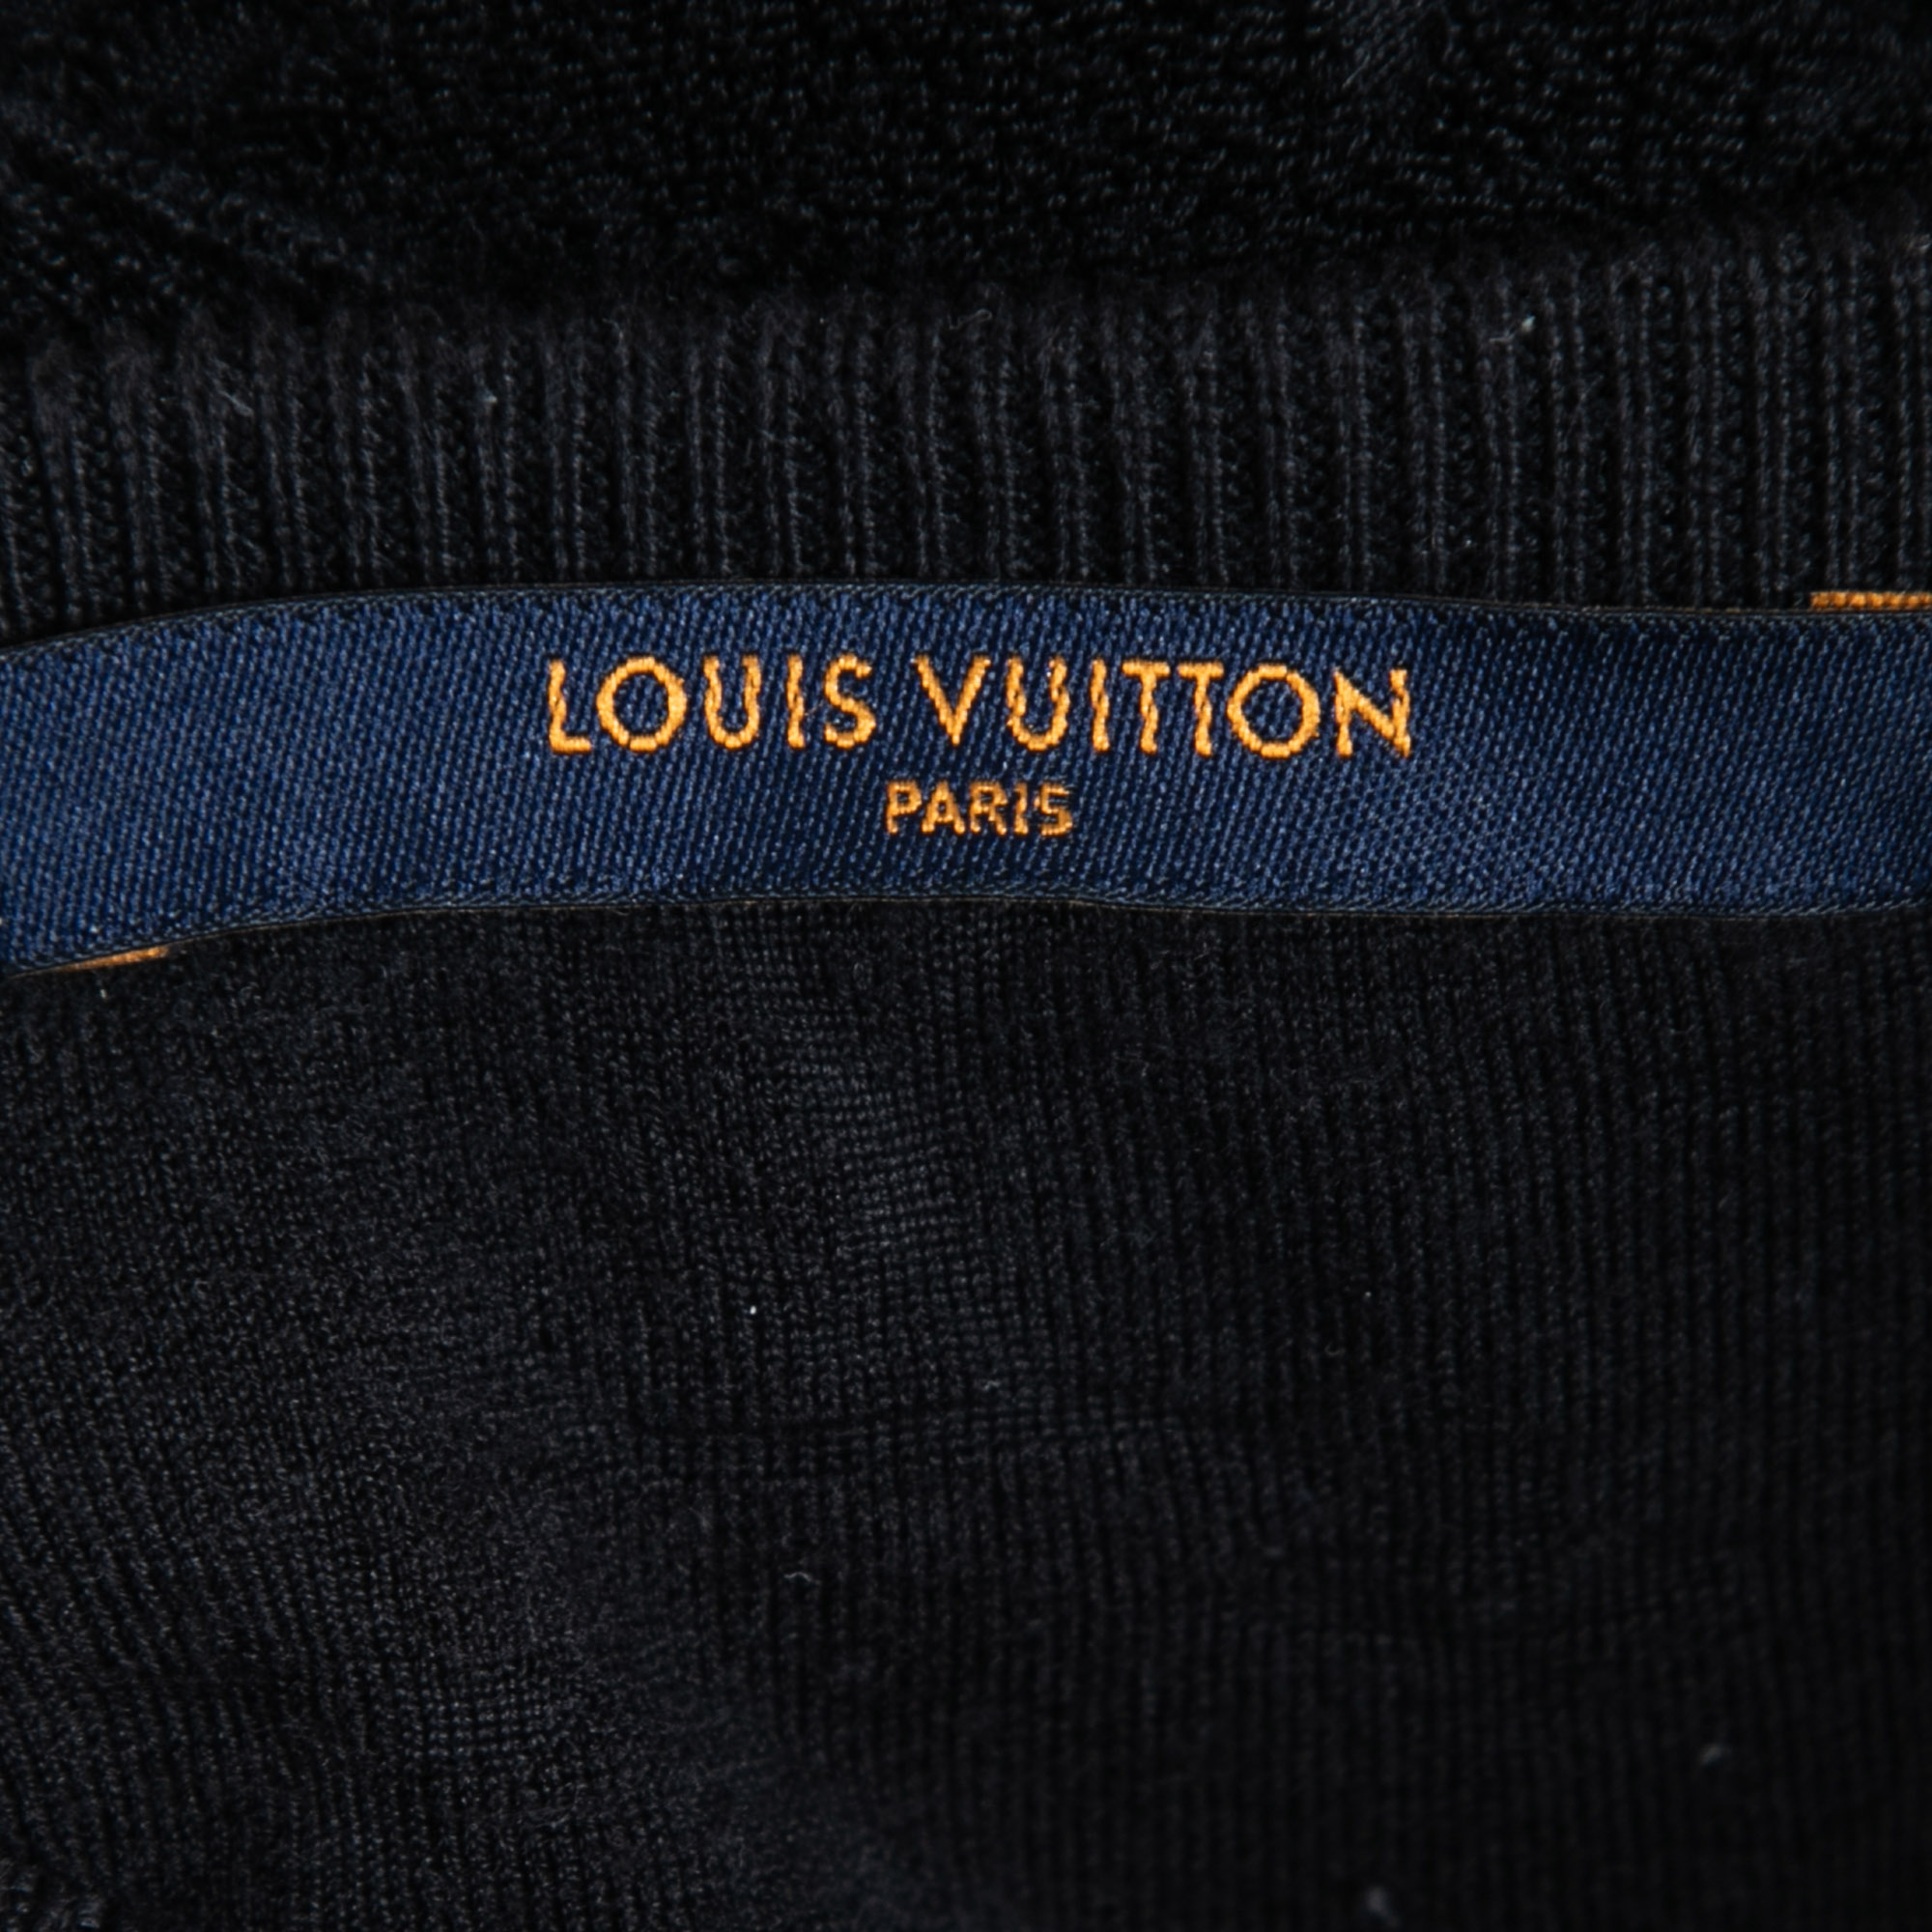 T-shirt Louis Vuitton Brown size L KR in Cotton - 35462454